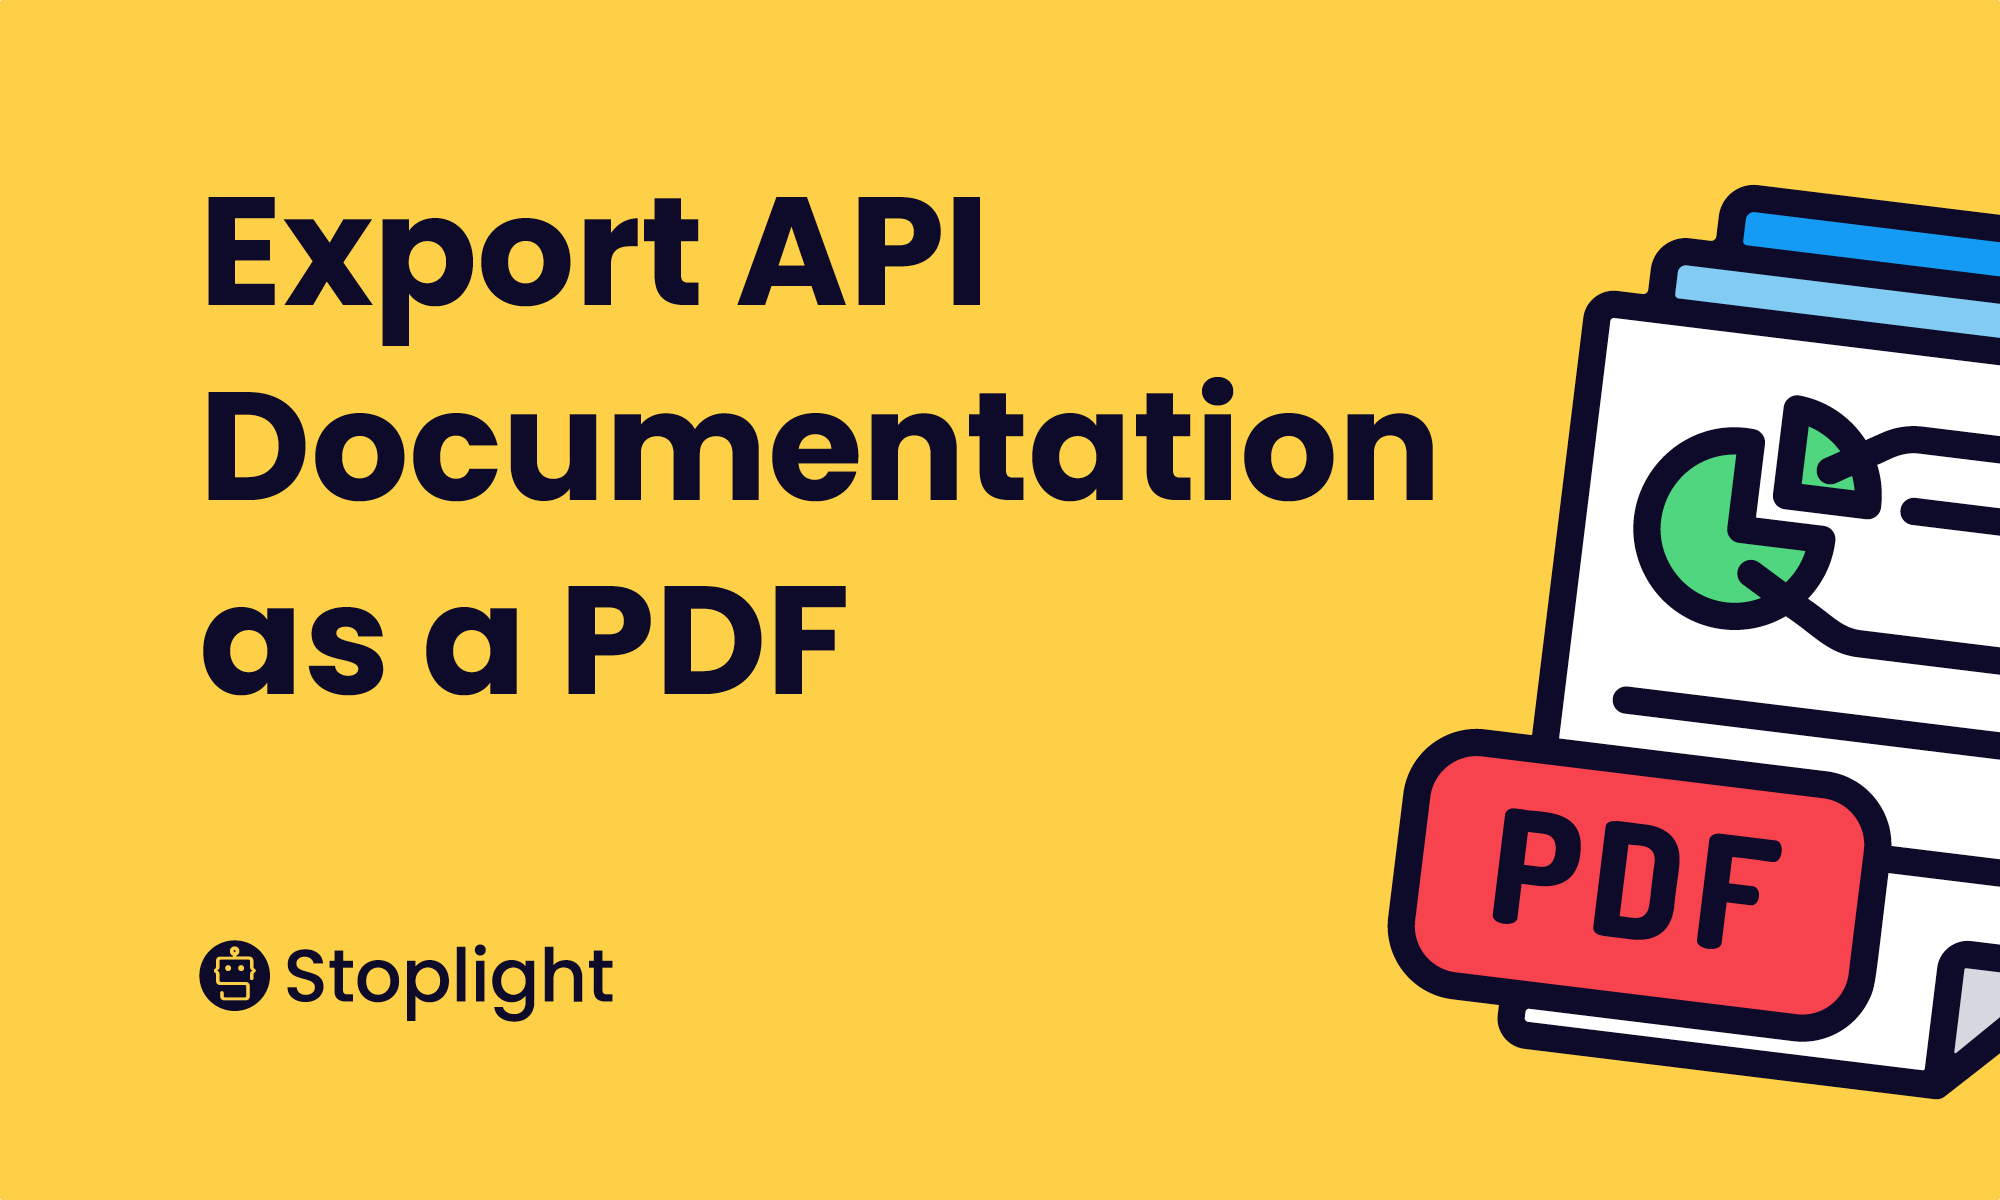 Export API Documentation as a PDF